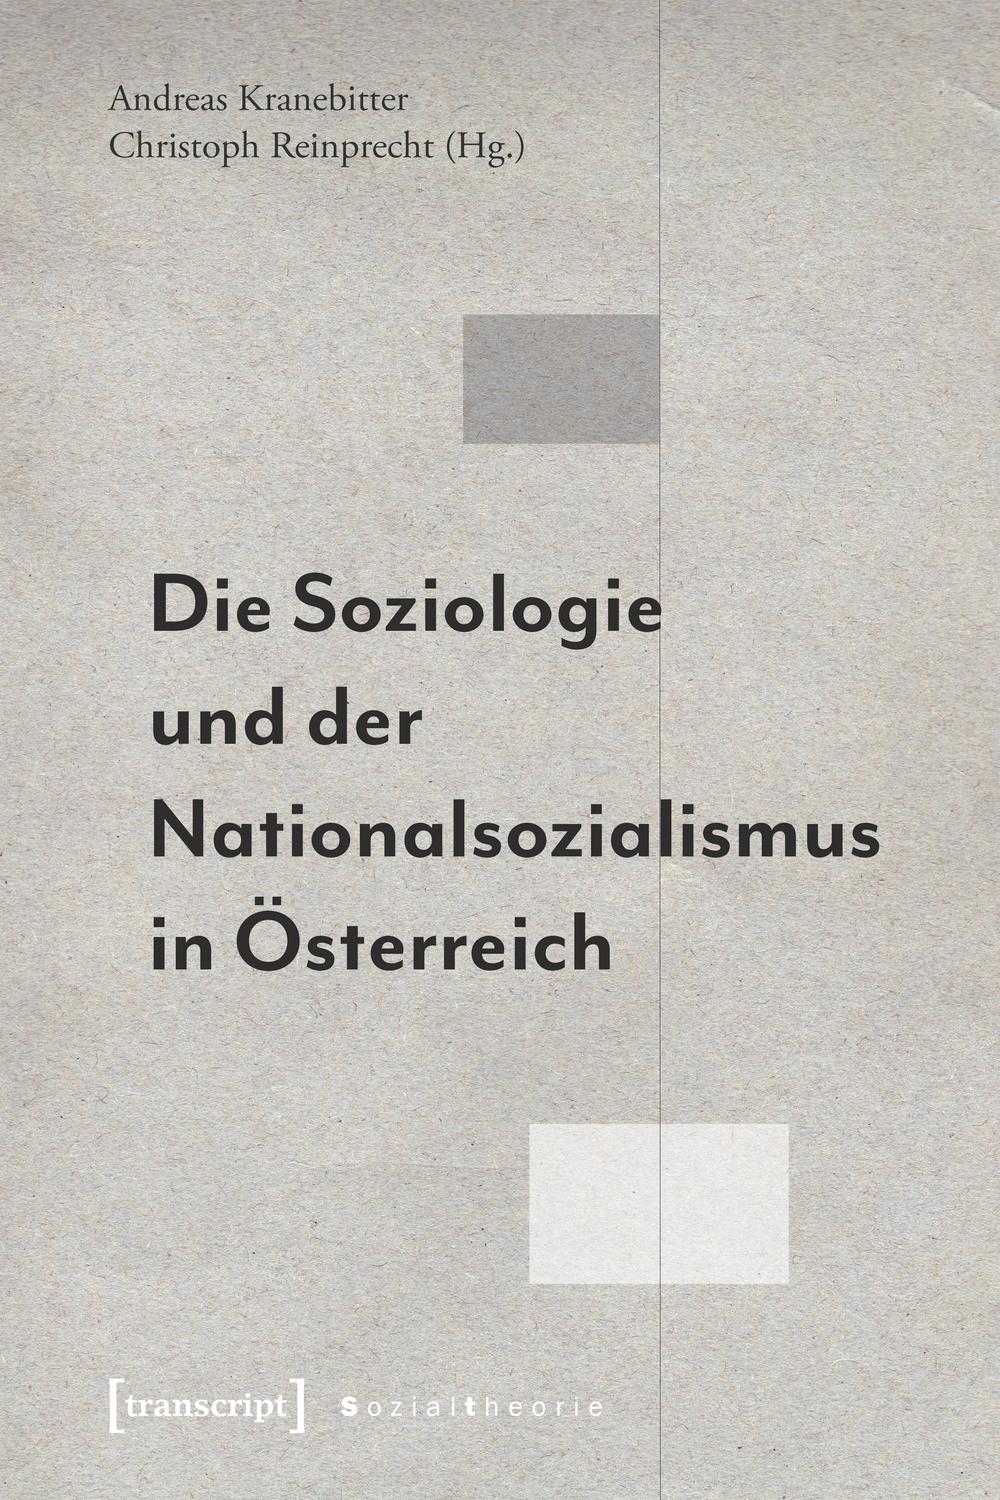 Die Soziologie und der Nationalsozialismus in Österreich - Andreas Kranebitter, Christoph Reinprecht